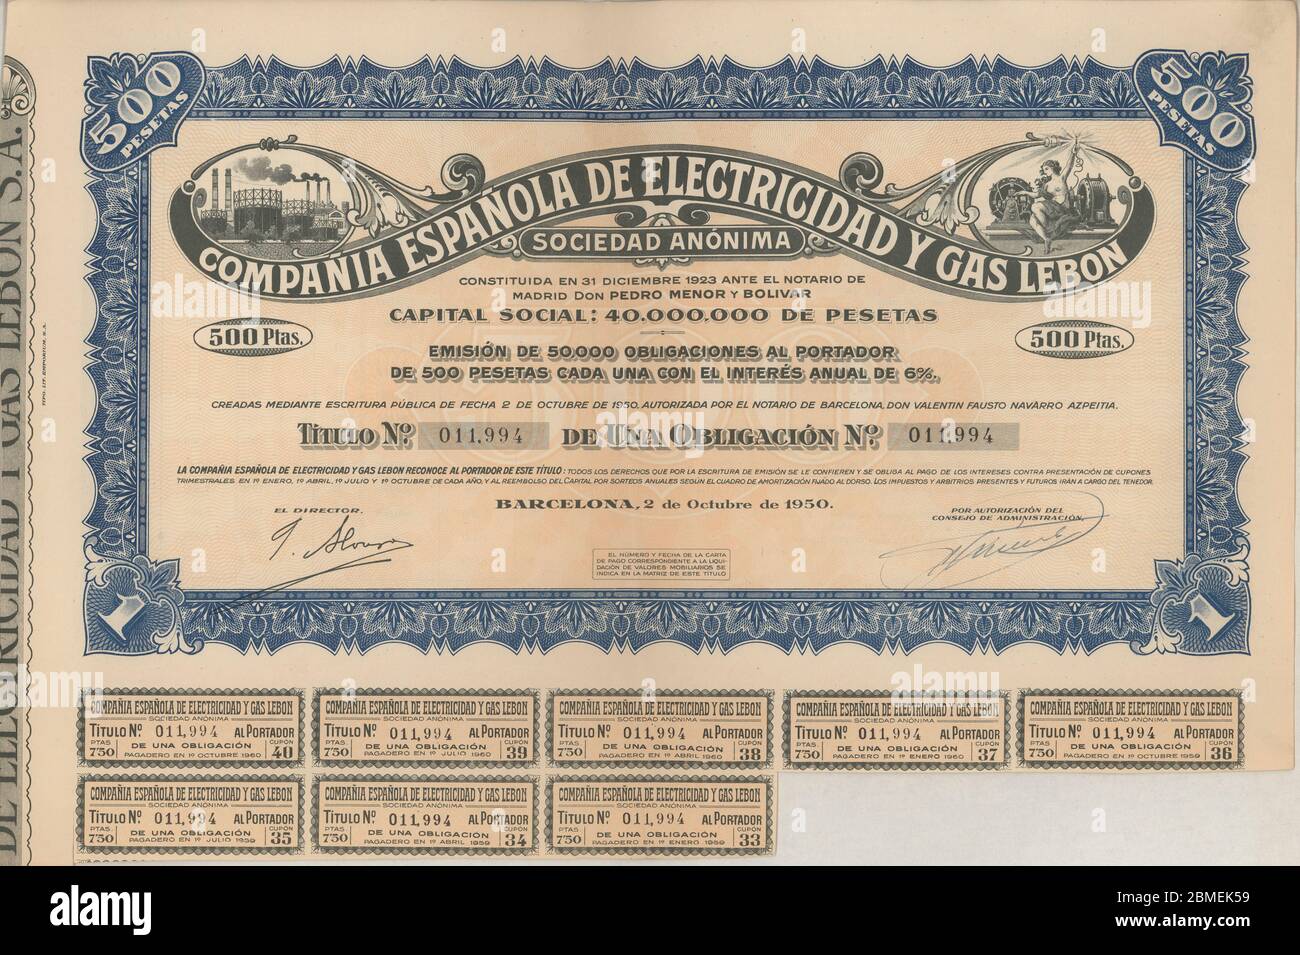 Obligación al portador de 500 pesetas cada una emitida por Compañía Española de Electricidad y Gas Lebon S.A. Barcelona, octubre de 1950. Stock Photo